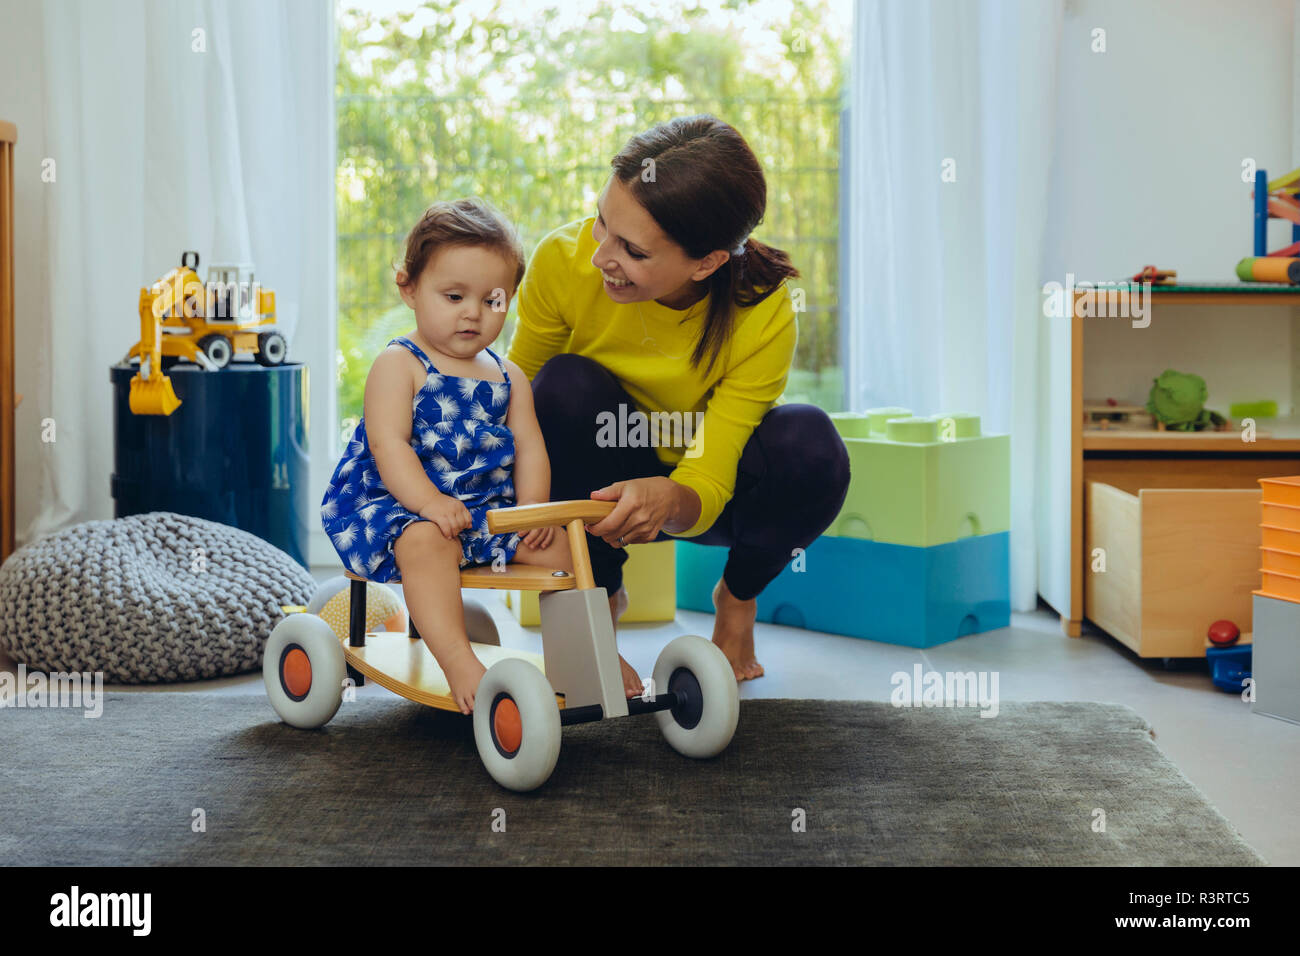 Glückliche Mutter mit Baby auf spielzeugauto im Wohnzimmer Stockfoto